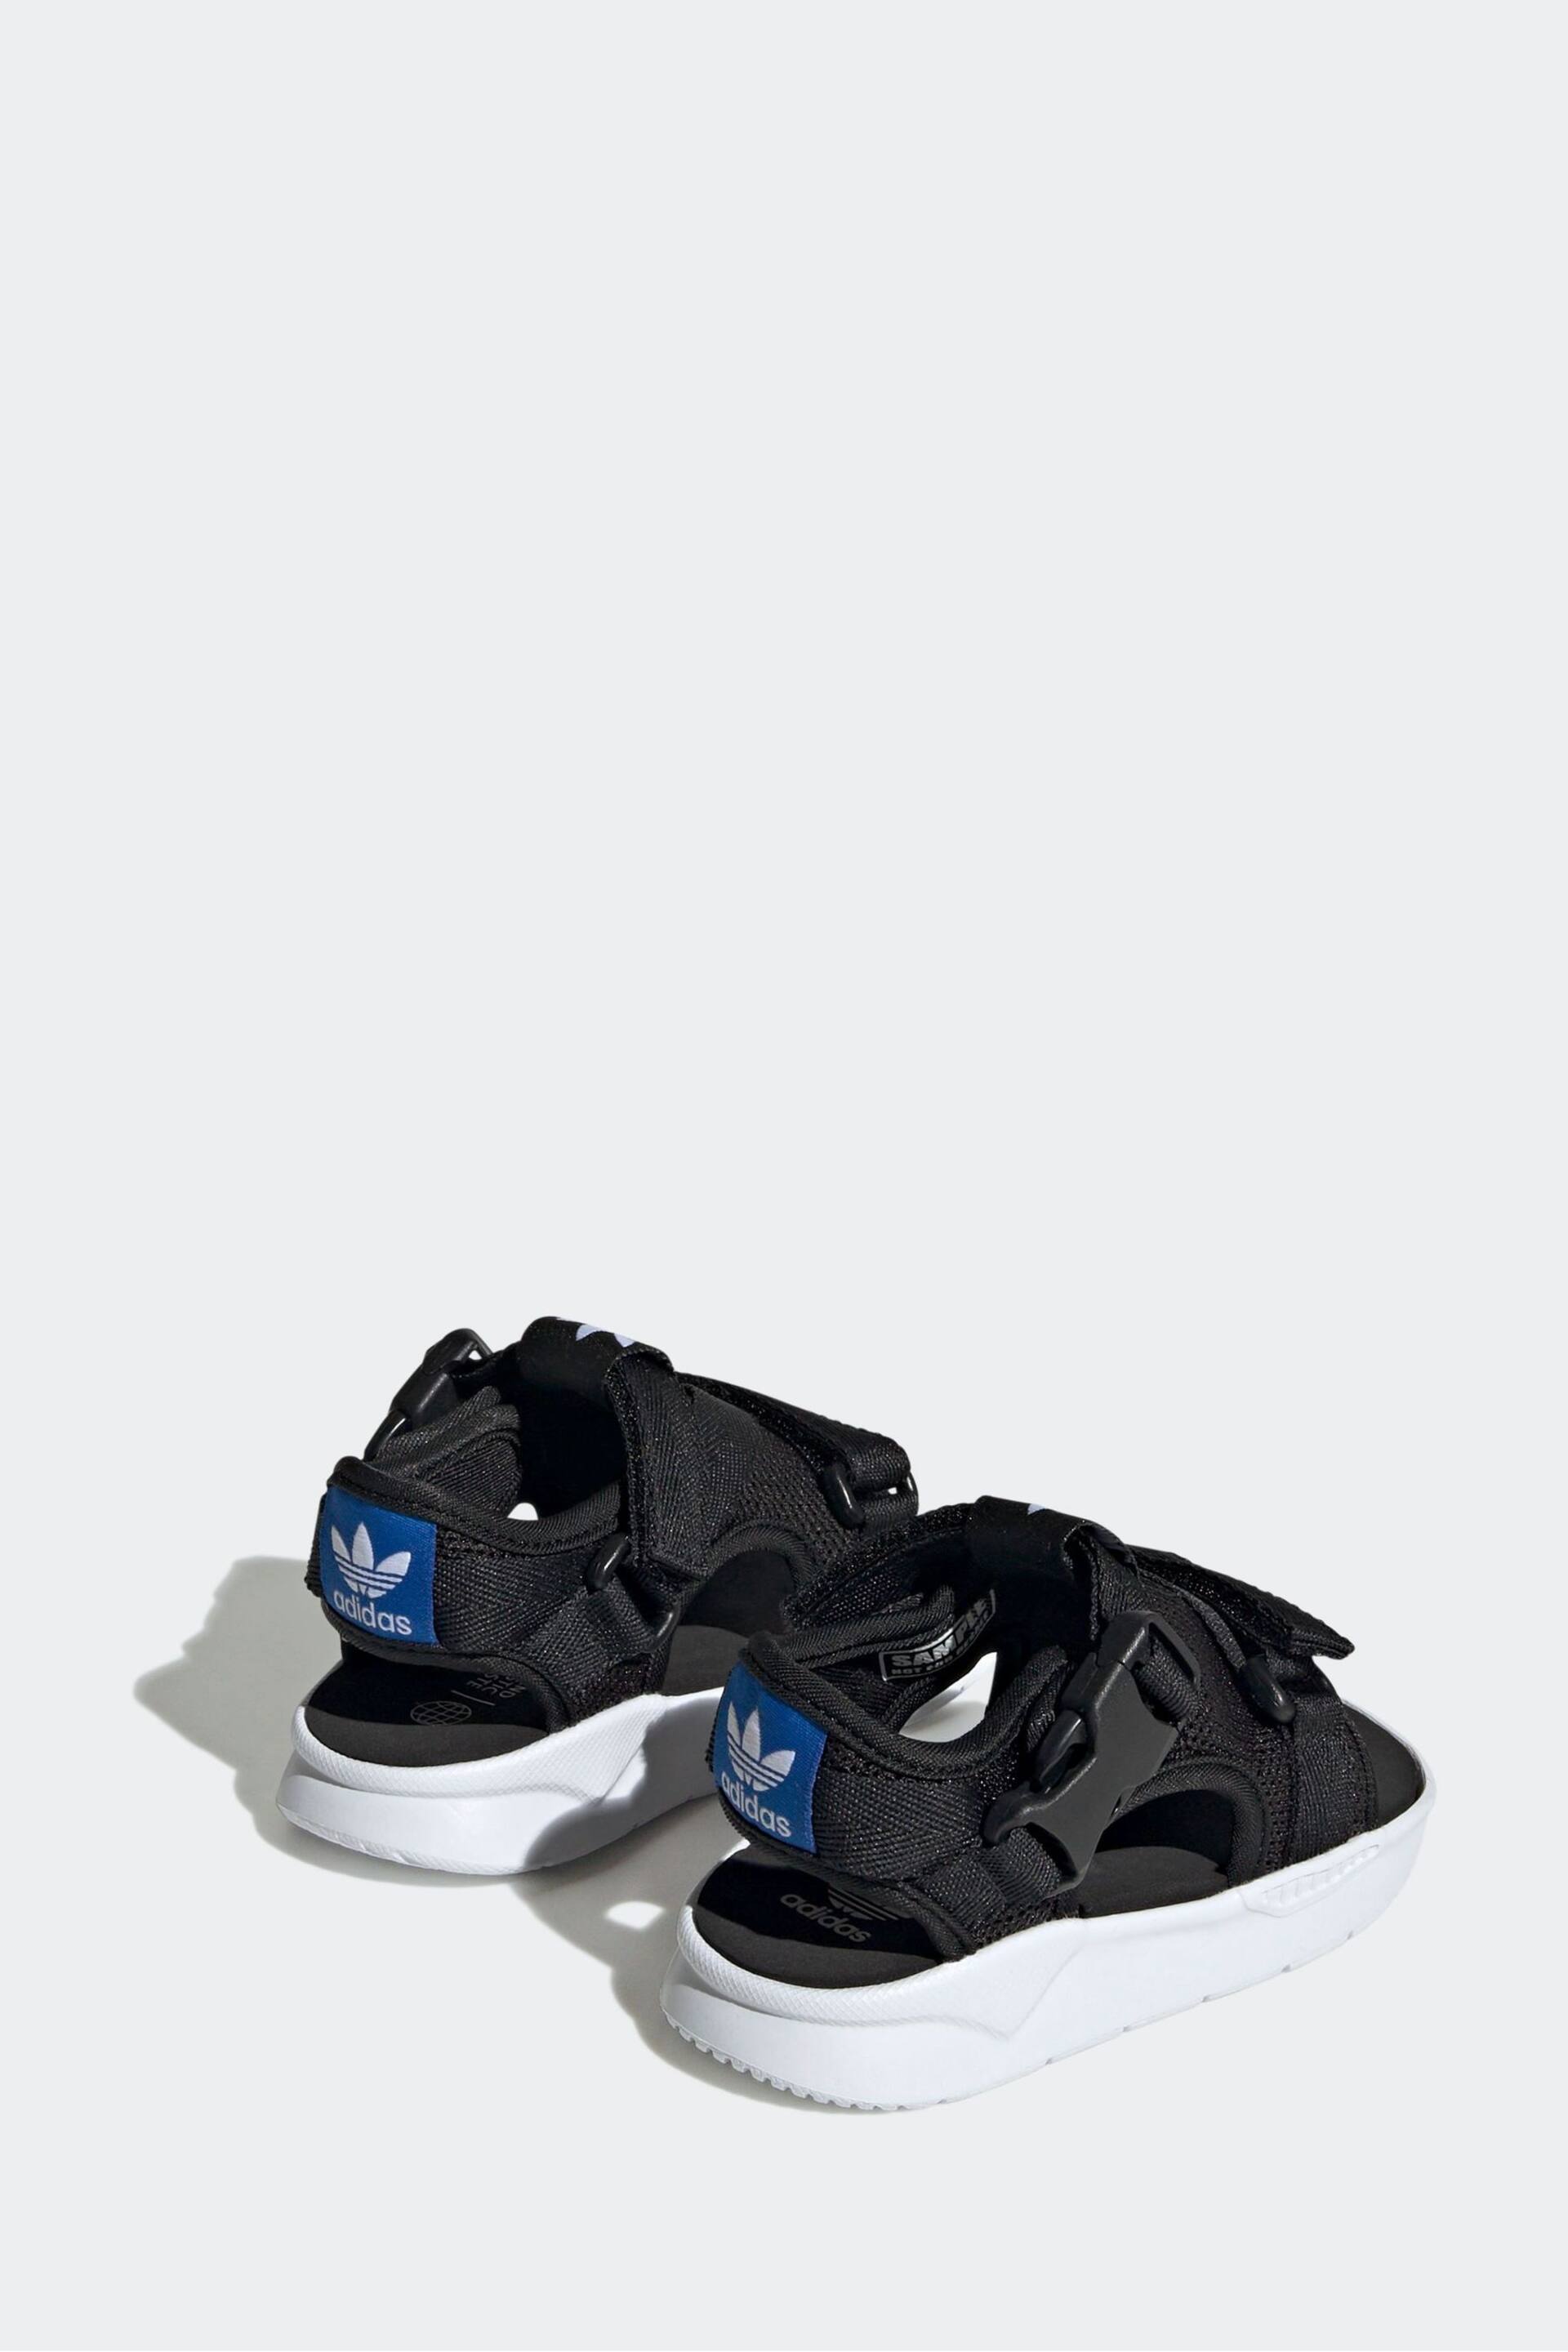 adidas Originals 360 3.0 Black Sandals - Image 3 of 9